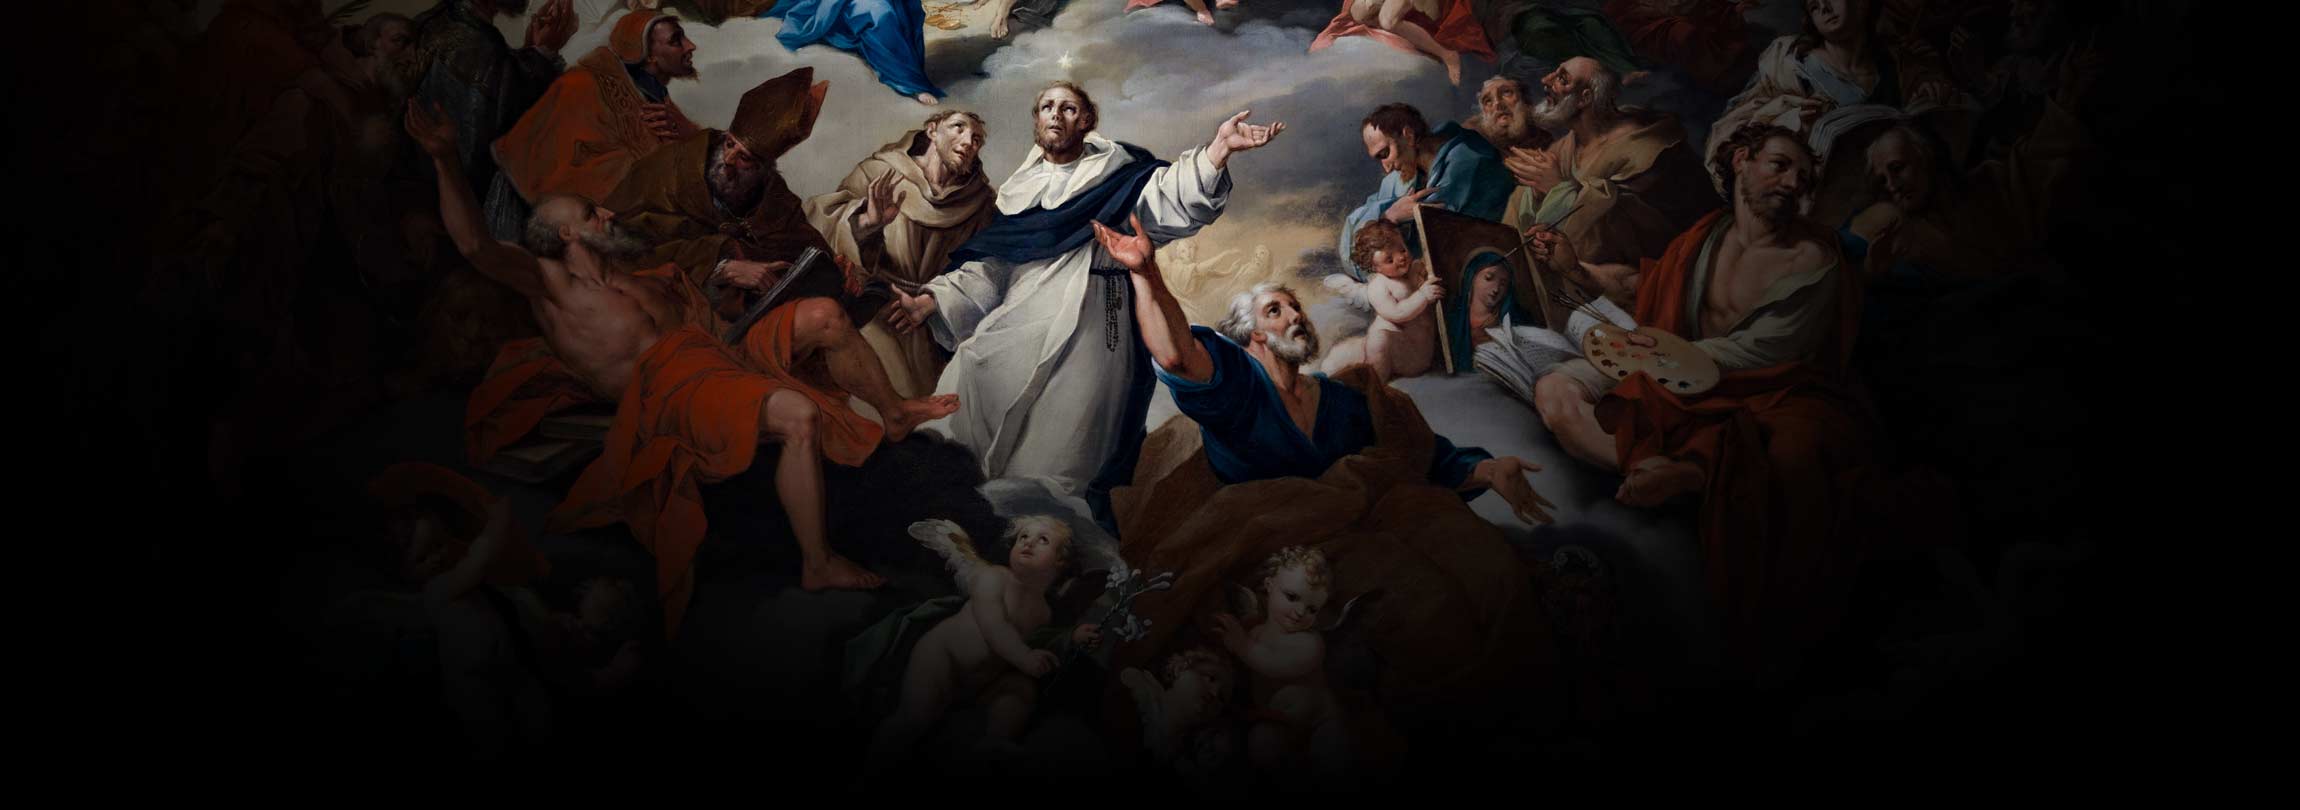 Os santos no céu realmente intercedem por nós?